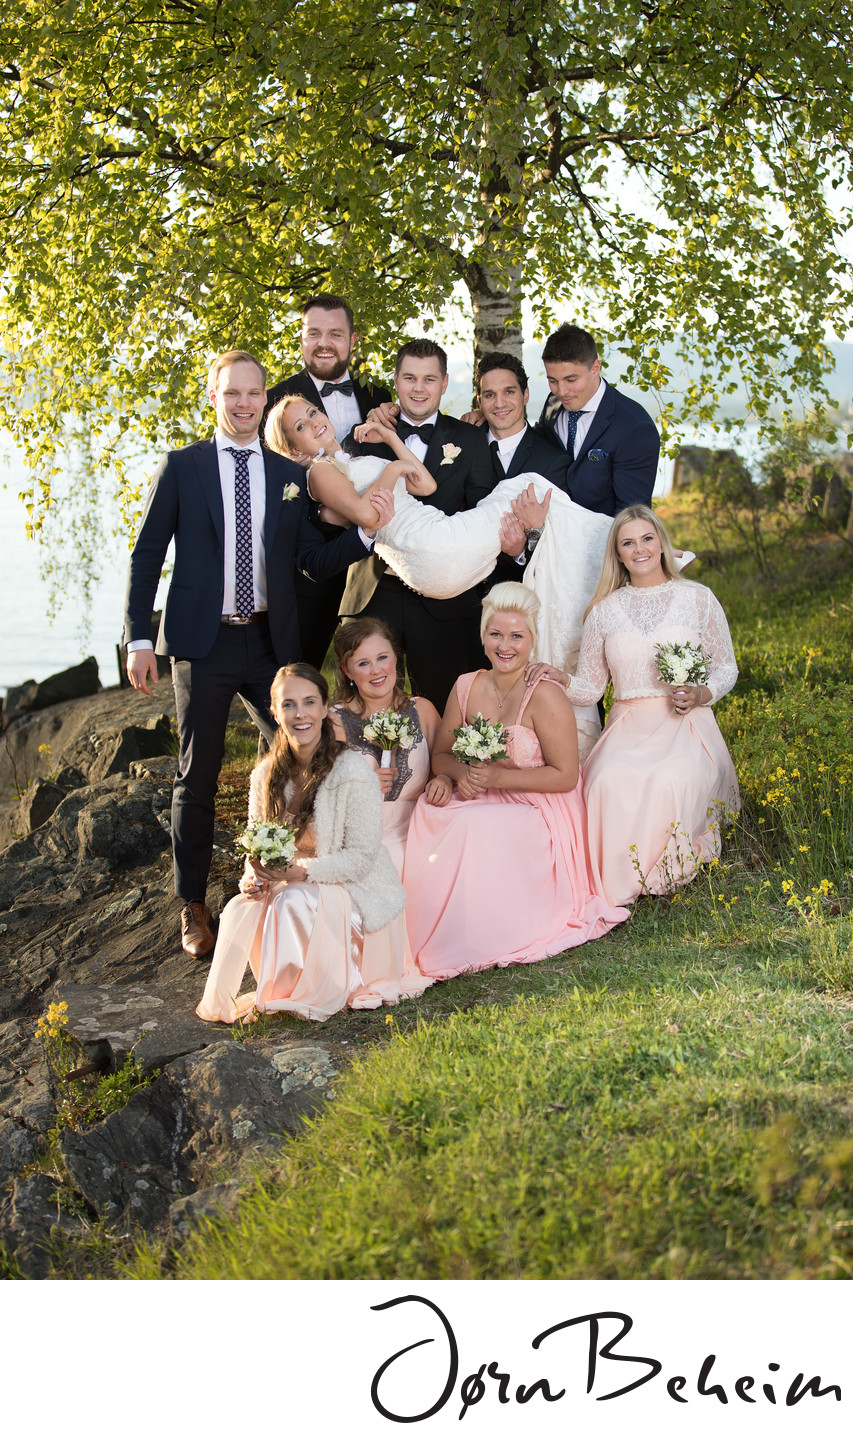 Vennebilder og bryllup, se bryllupsfotograf Jørn Beheim